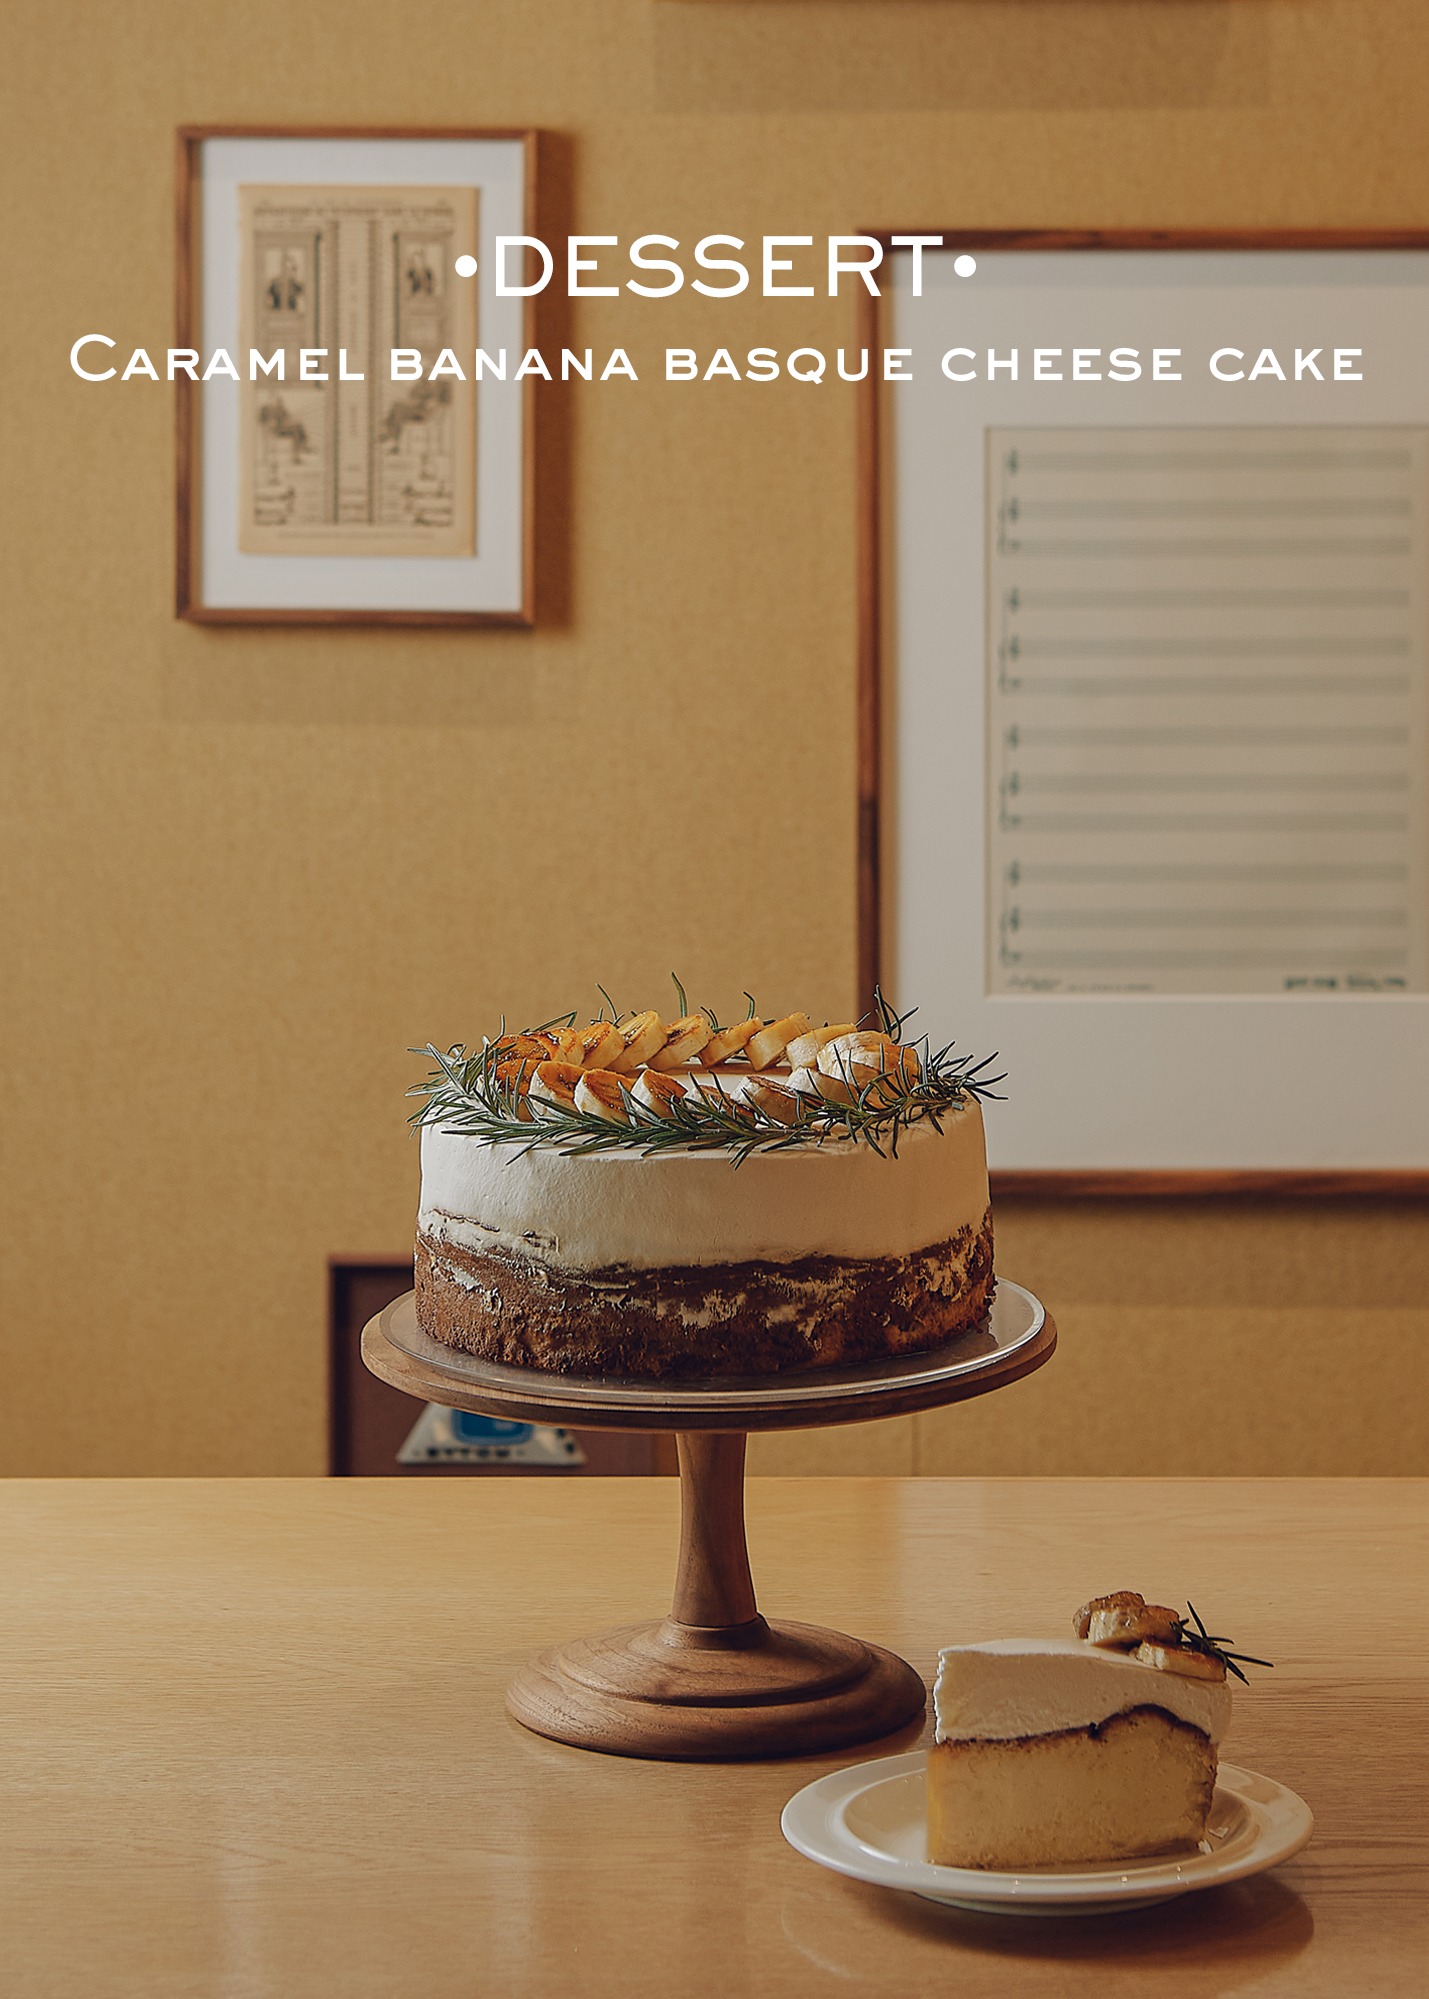 Caramel banana basque cheese cake